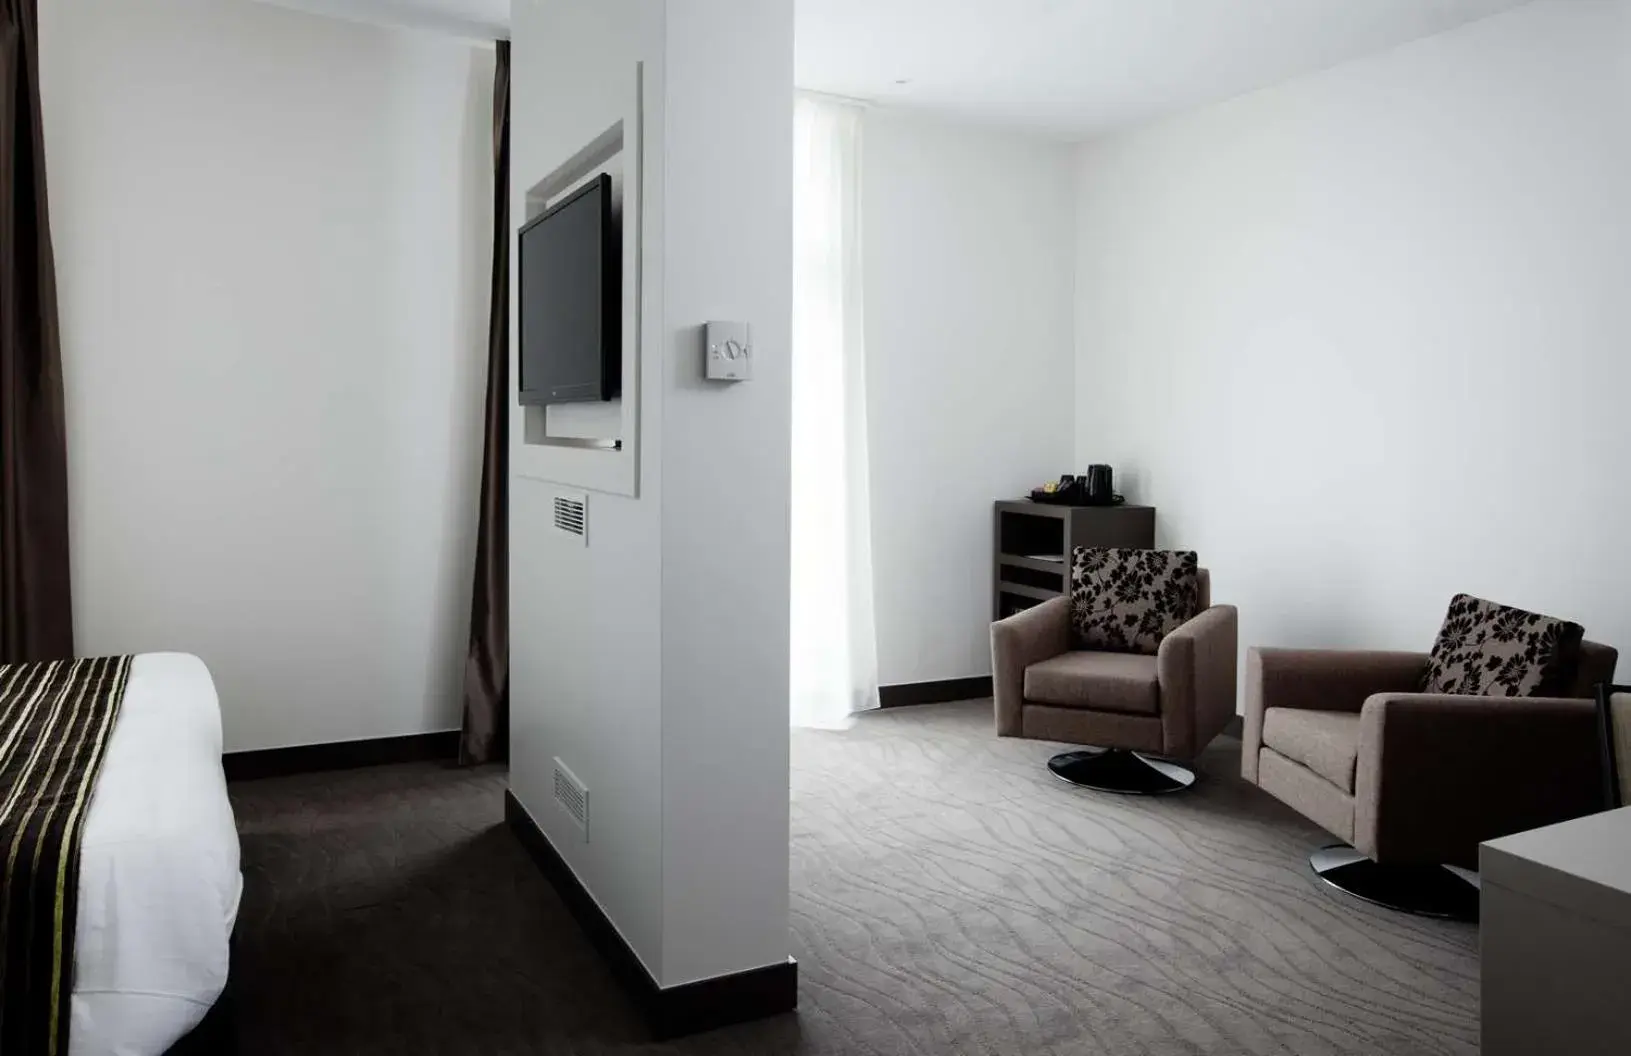 Bedroom, Seating Area in Brit Hotel de Grignan Vichy